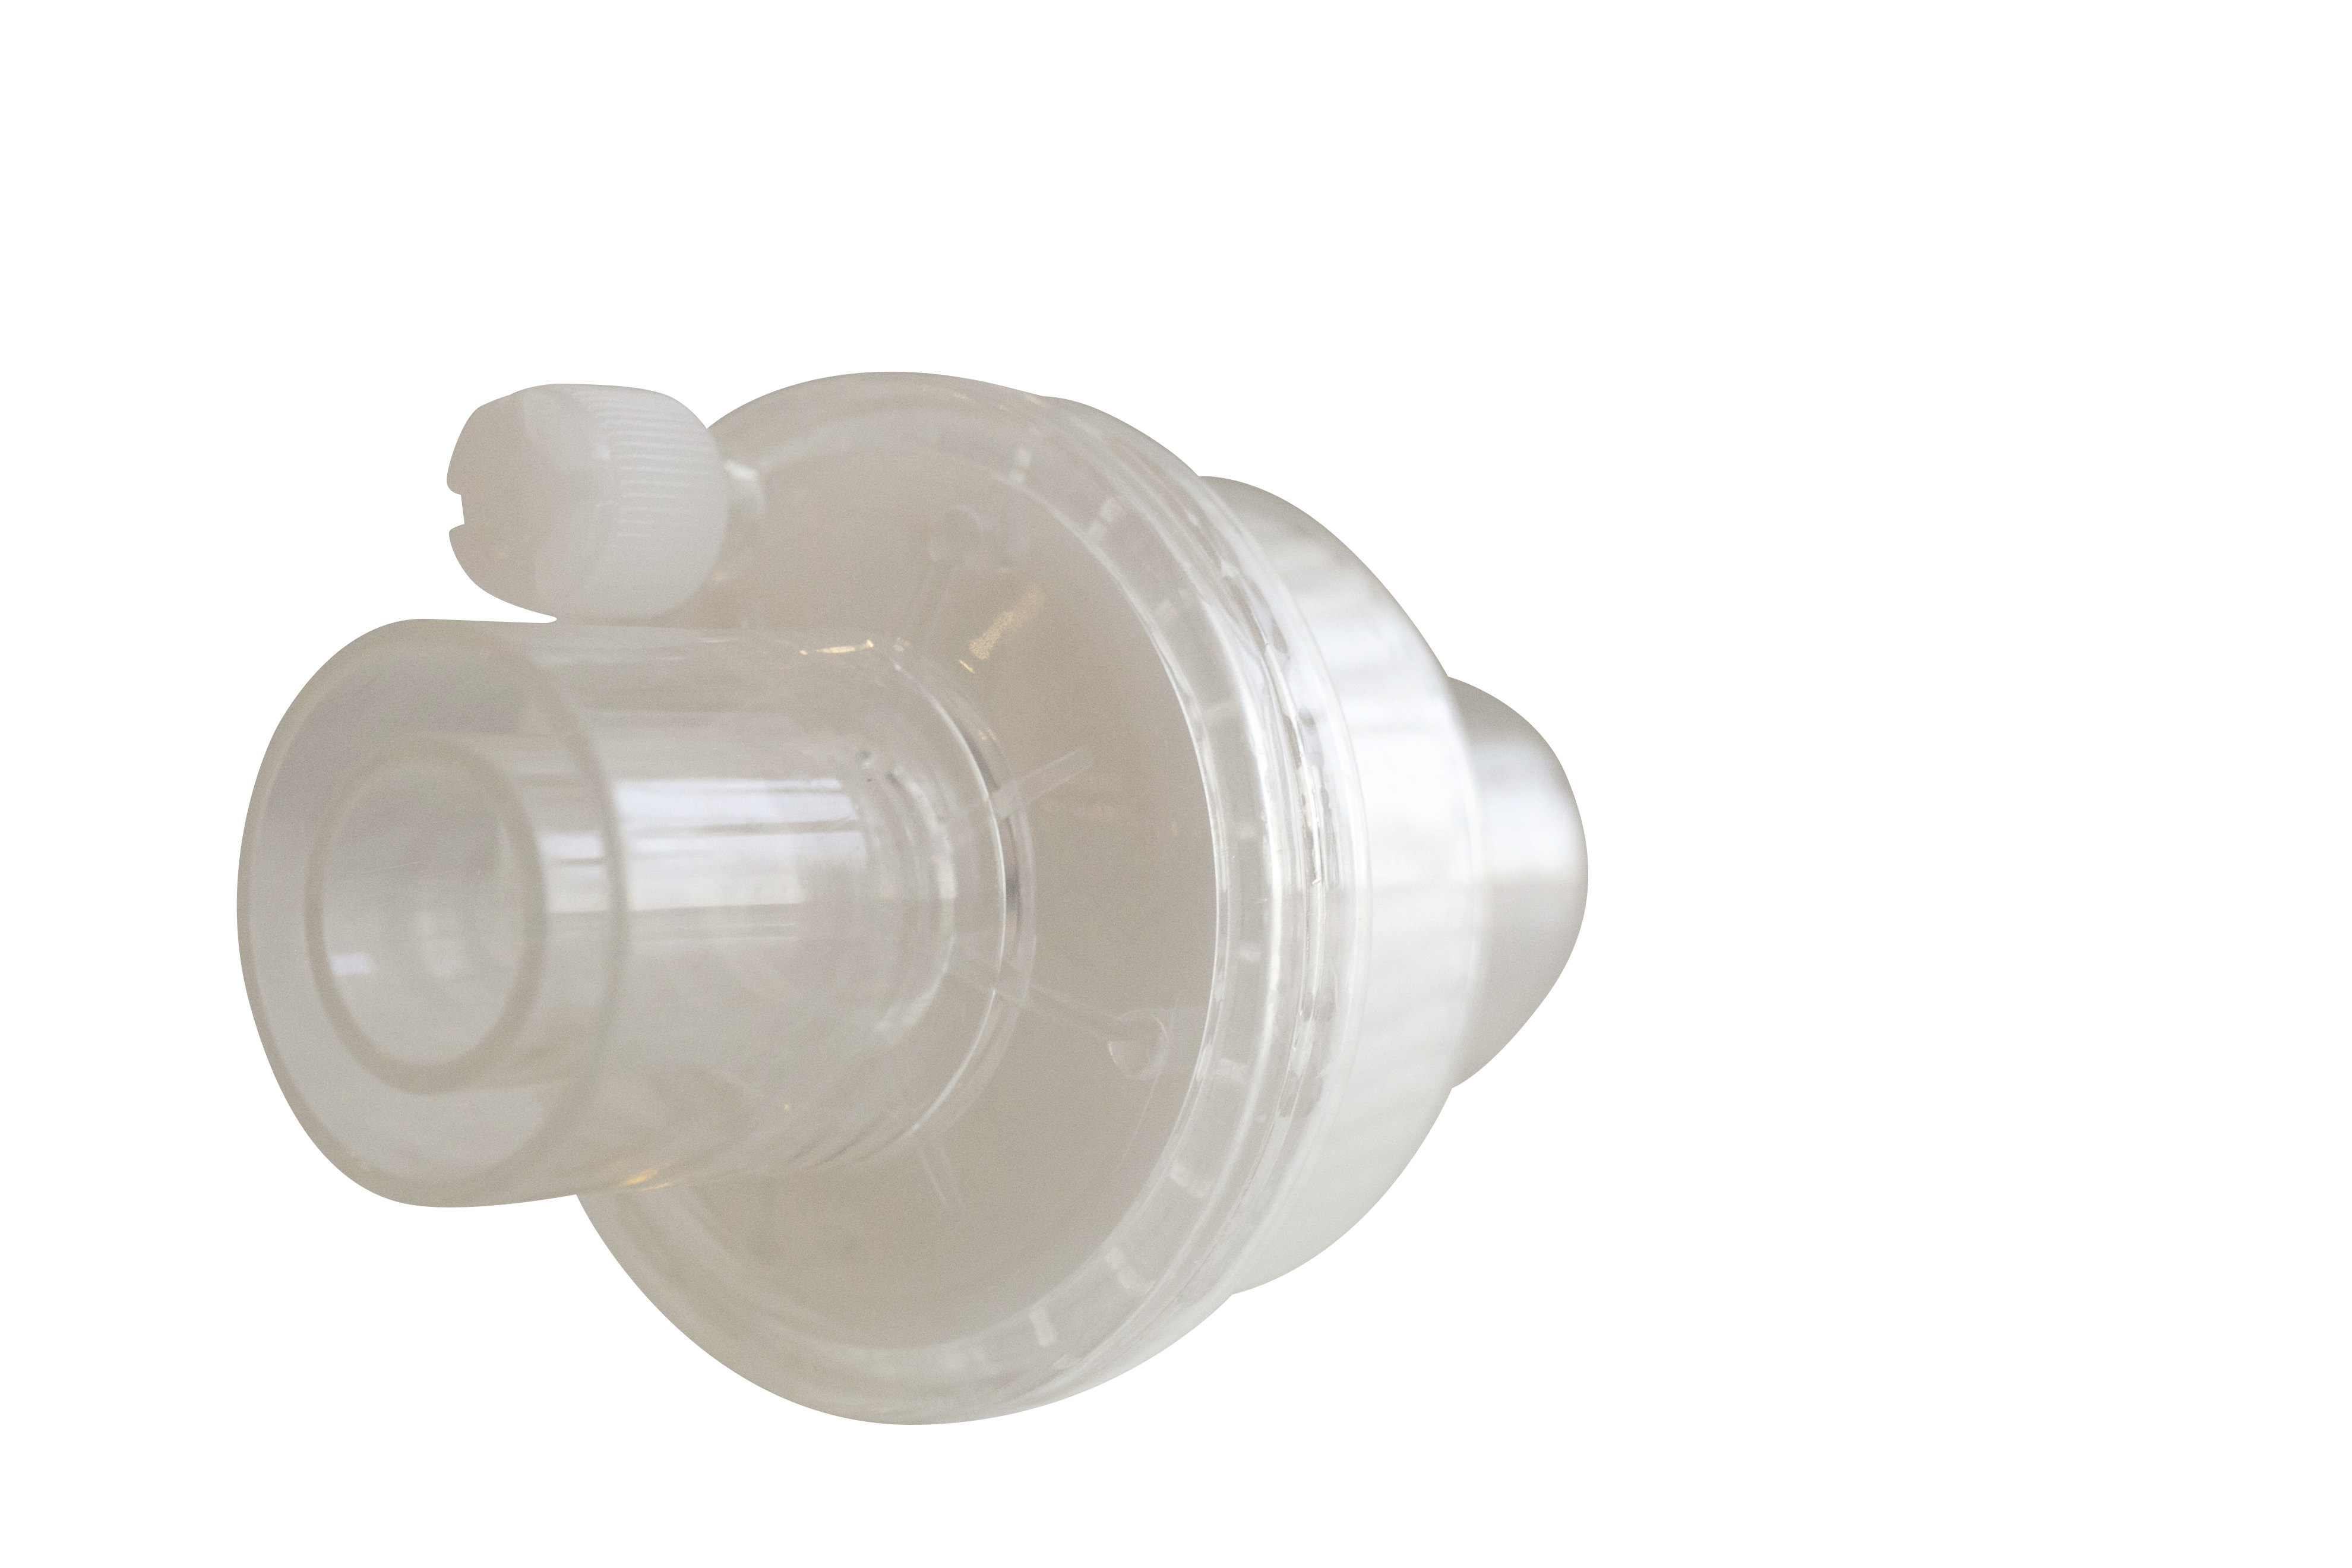 VH-3200 Фильтр тепловлагообменный дыхательный, детский (Luer Lock, 22F/15M, 22M/15F), электростатический, складчатая бумажная мембрана, 29 мл